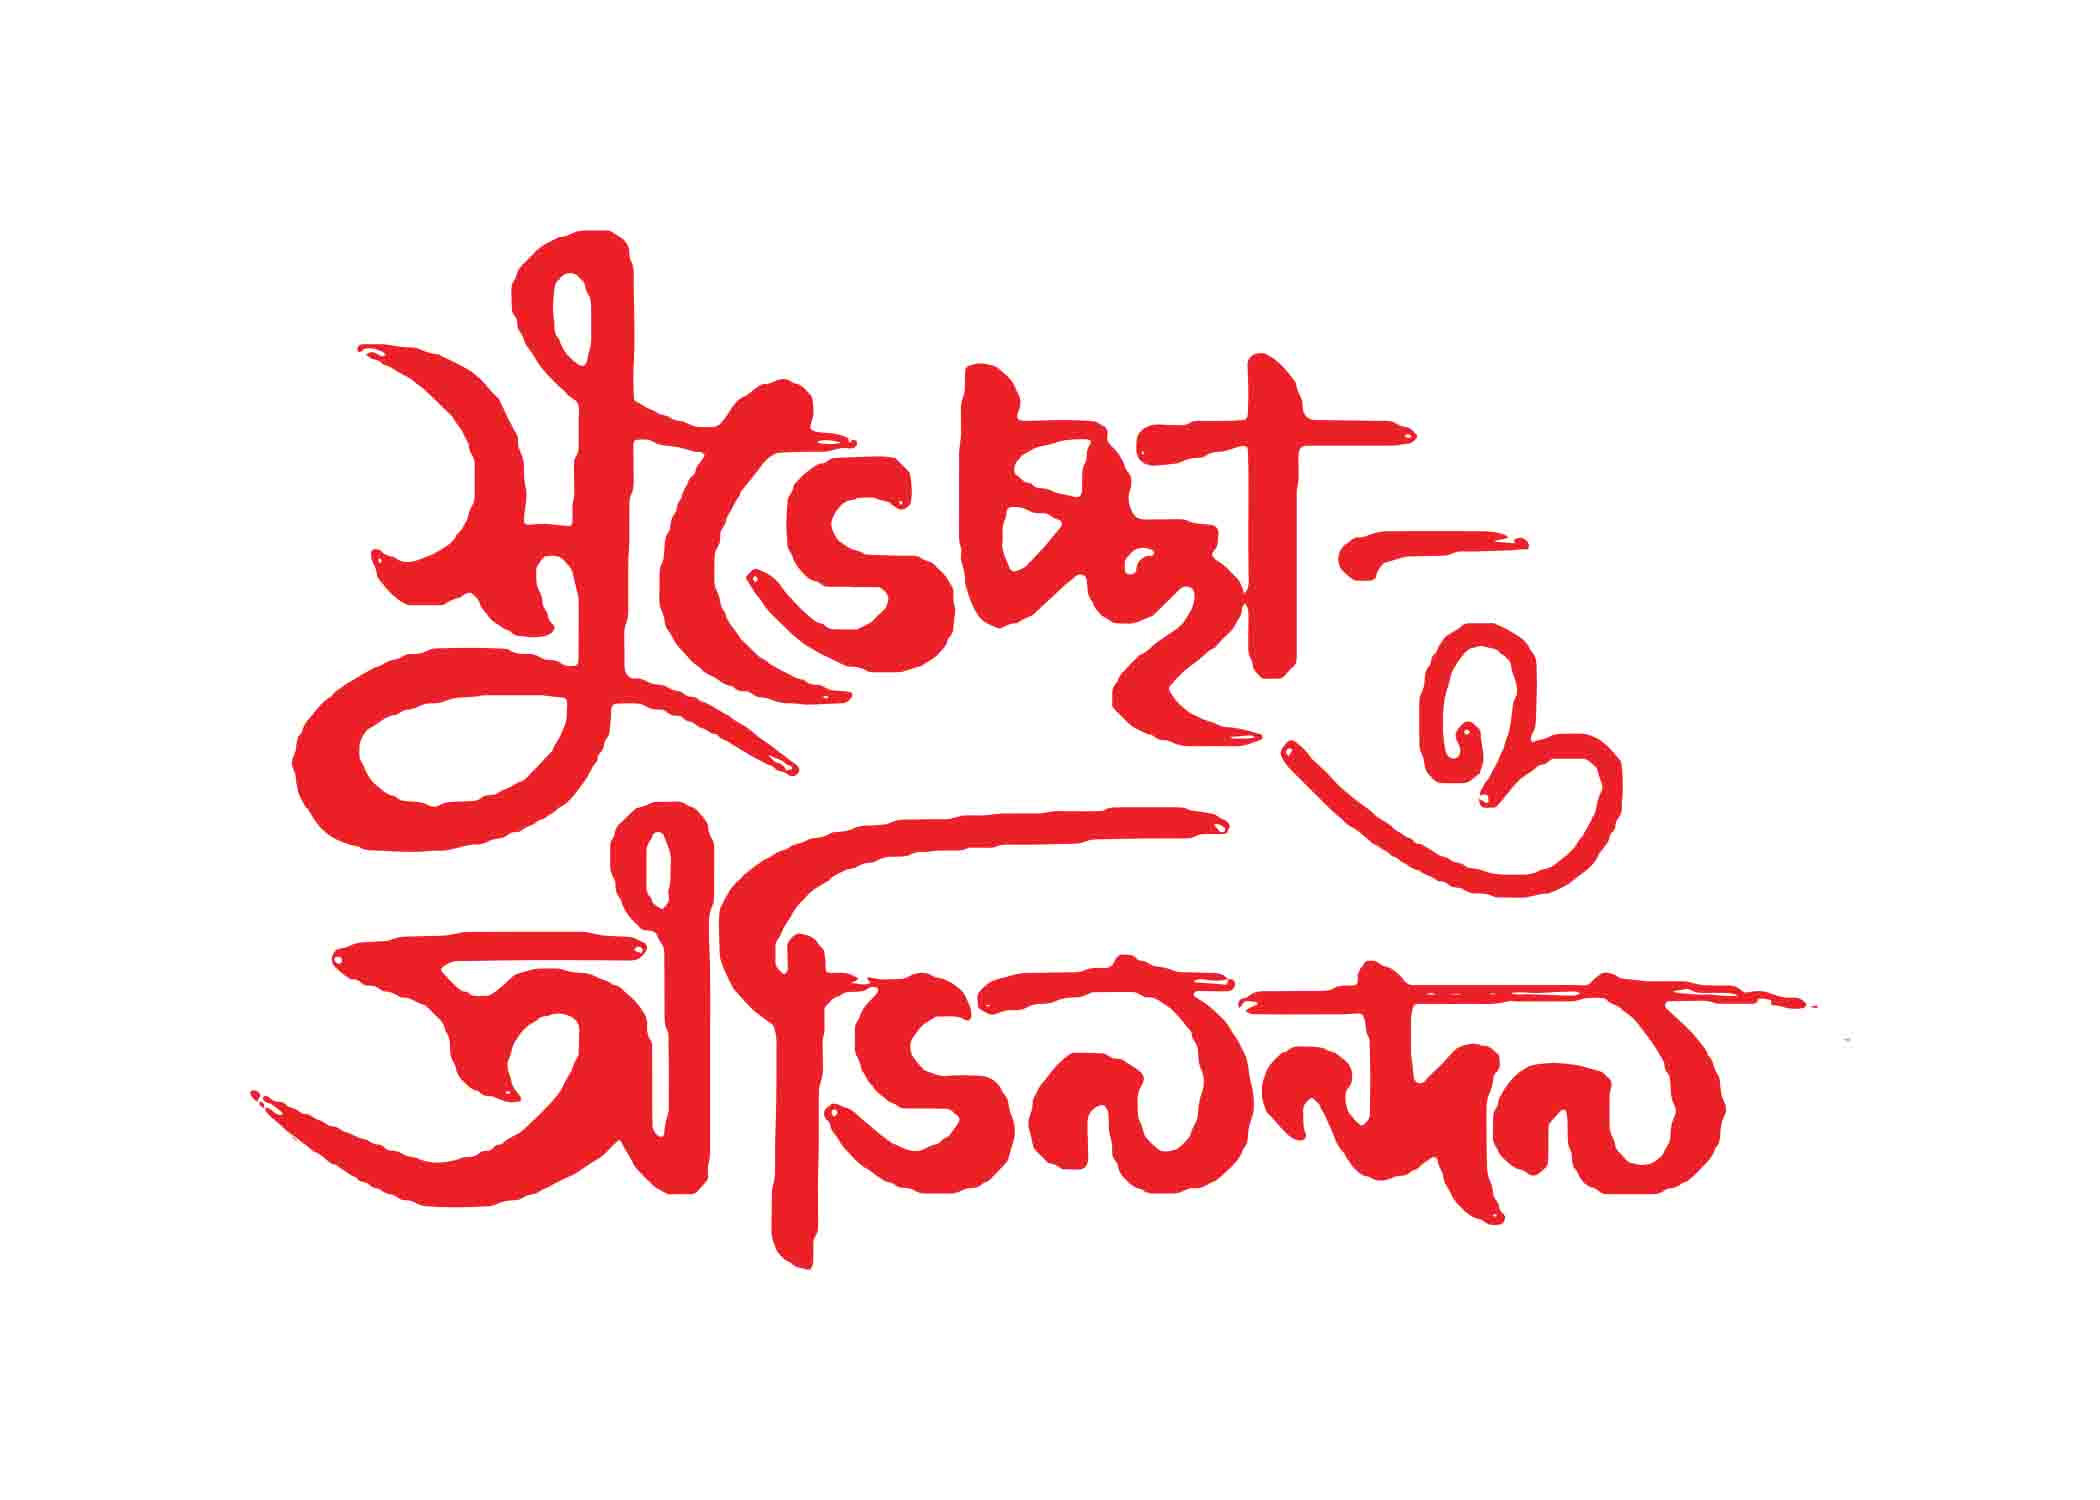 শুভেচ্ছা ও অভিনন্দন টাইপোগ্রাফি । Bangla Typhography PNG